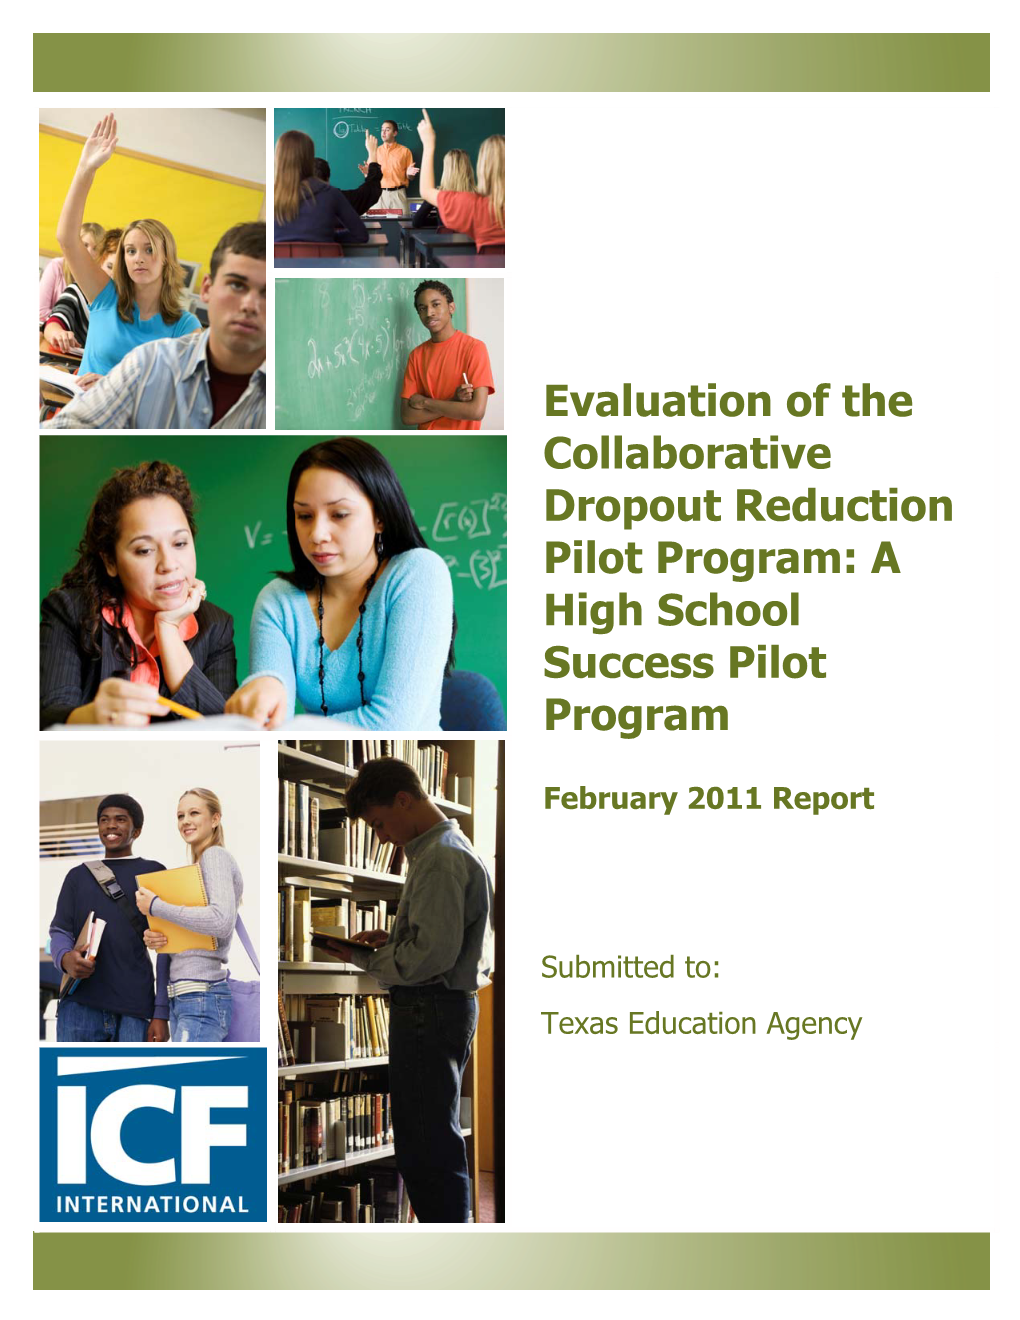 Evaluation of the Collaborative Dropout Reduction Pilot Program: a High School Success Pilot Program